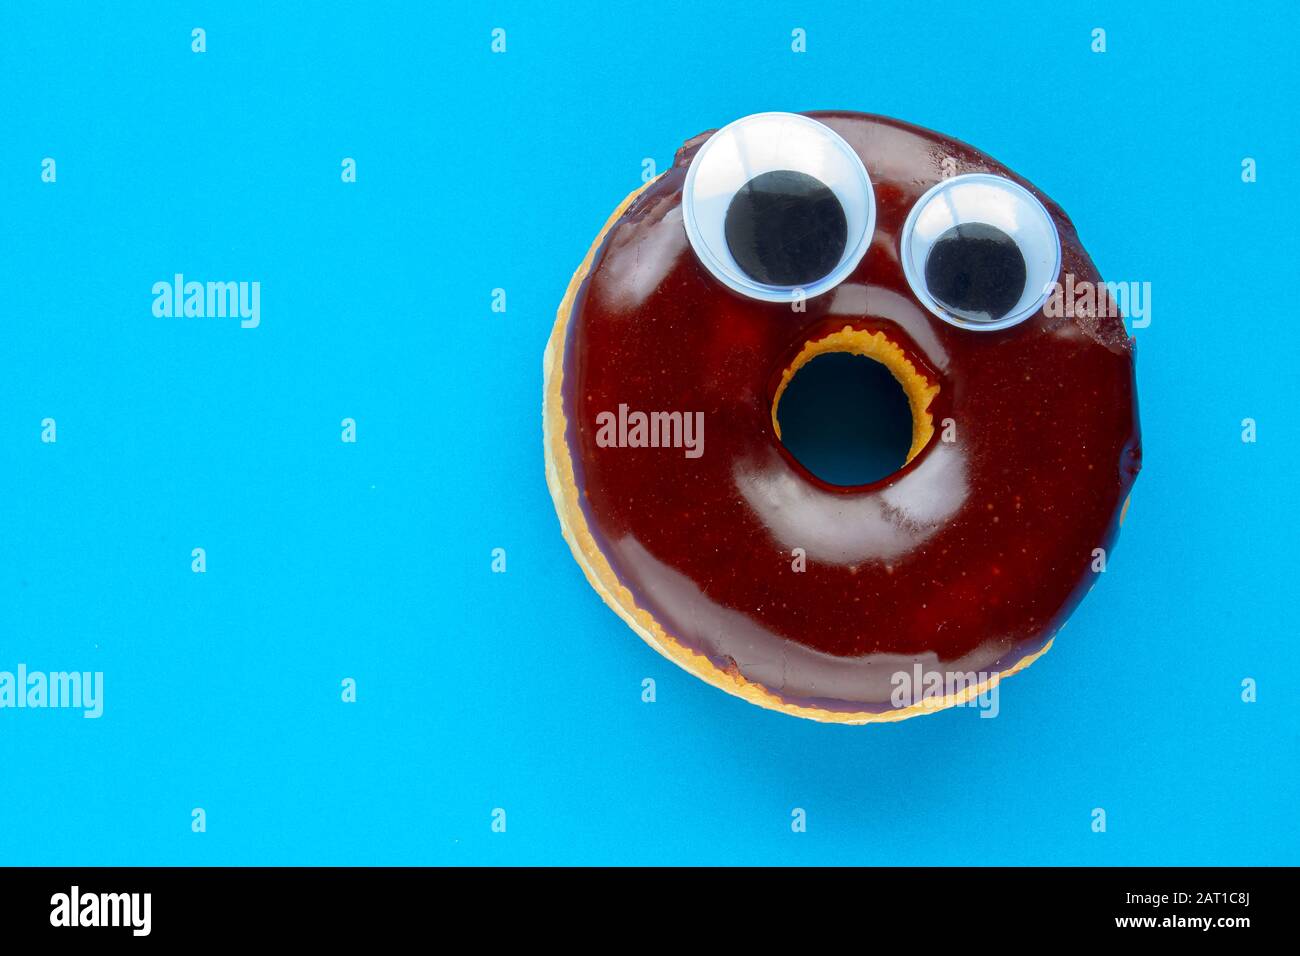 Un donut De Chocolate Tim Hortons con Bolas De Ojo de gorgojo negro sobre fondo azul Foto de stock